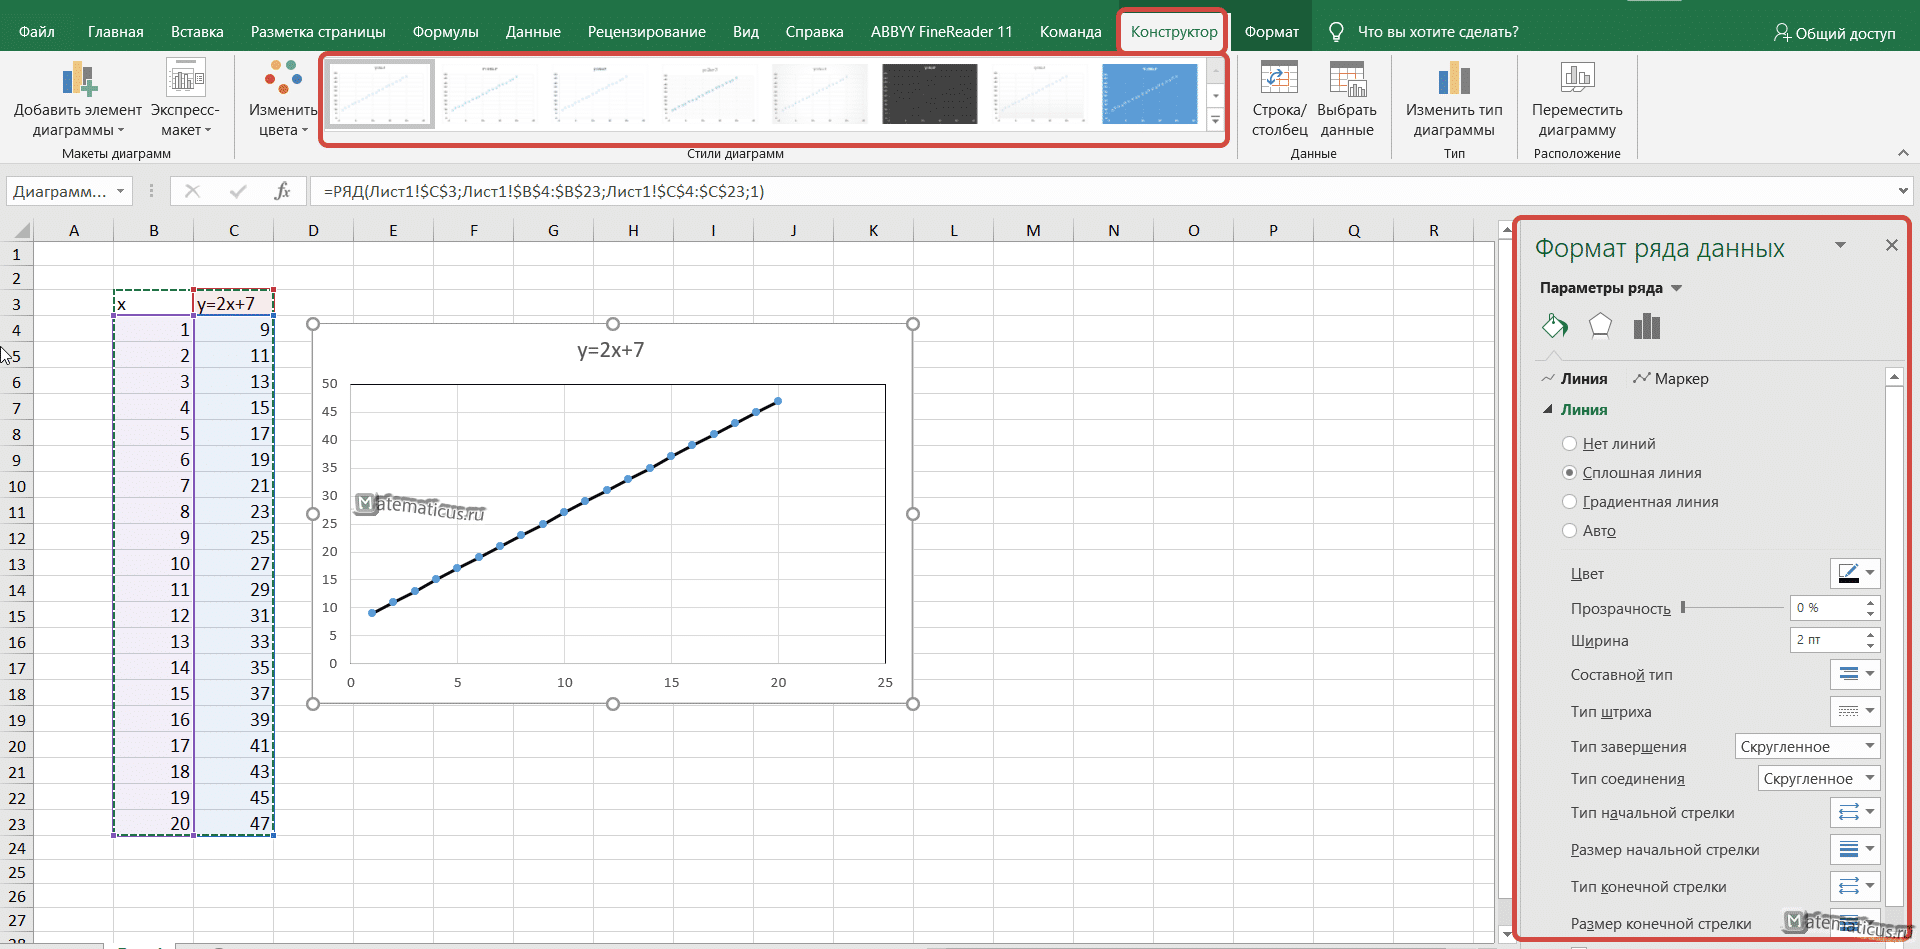 Как построить графики с осью времени по X и двумя разными градуировками по оси Y